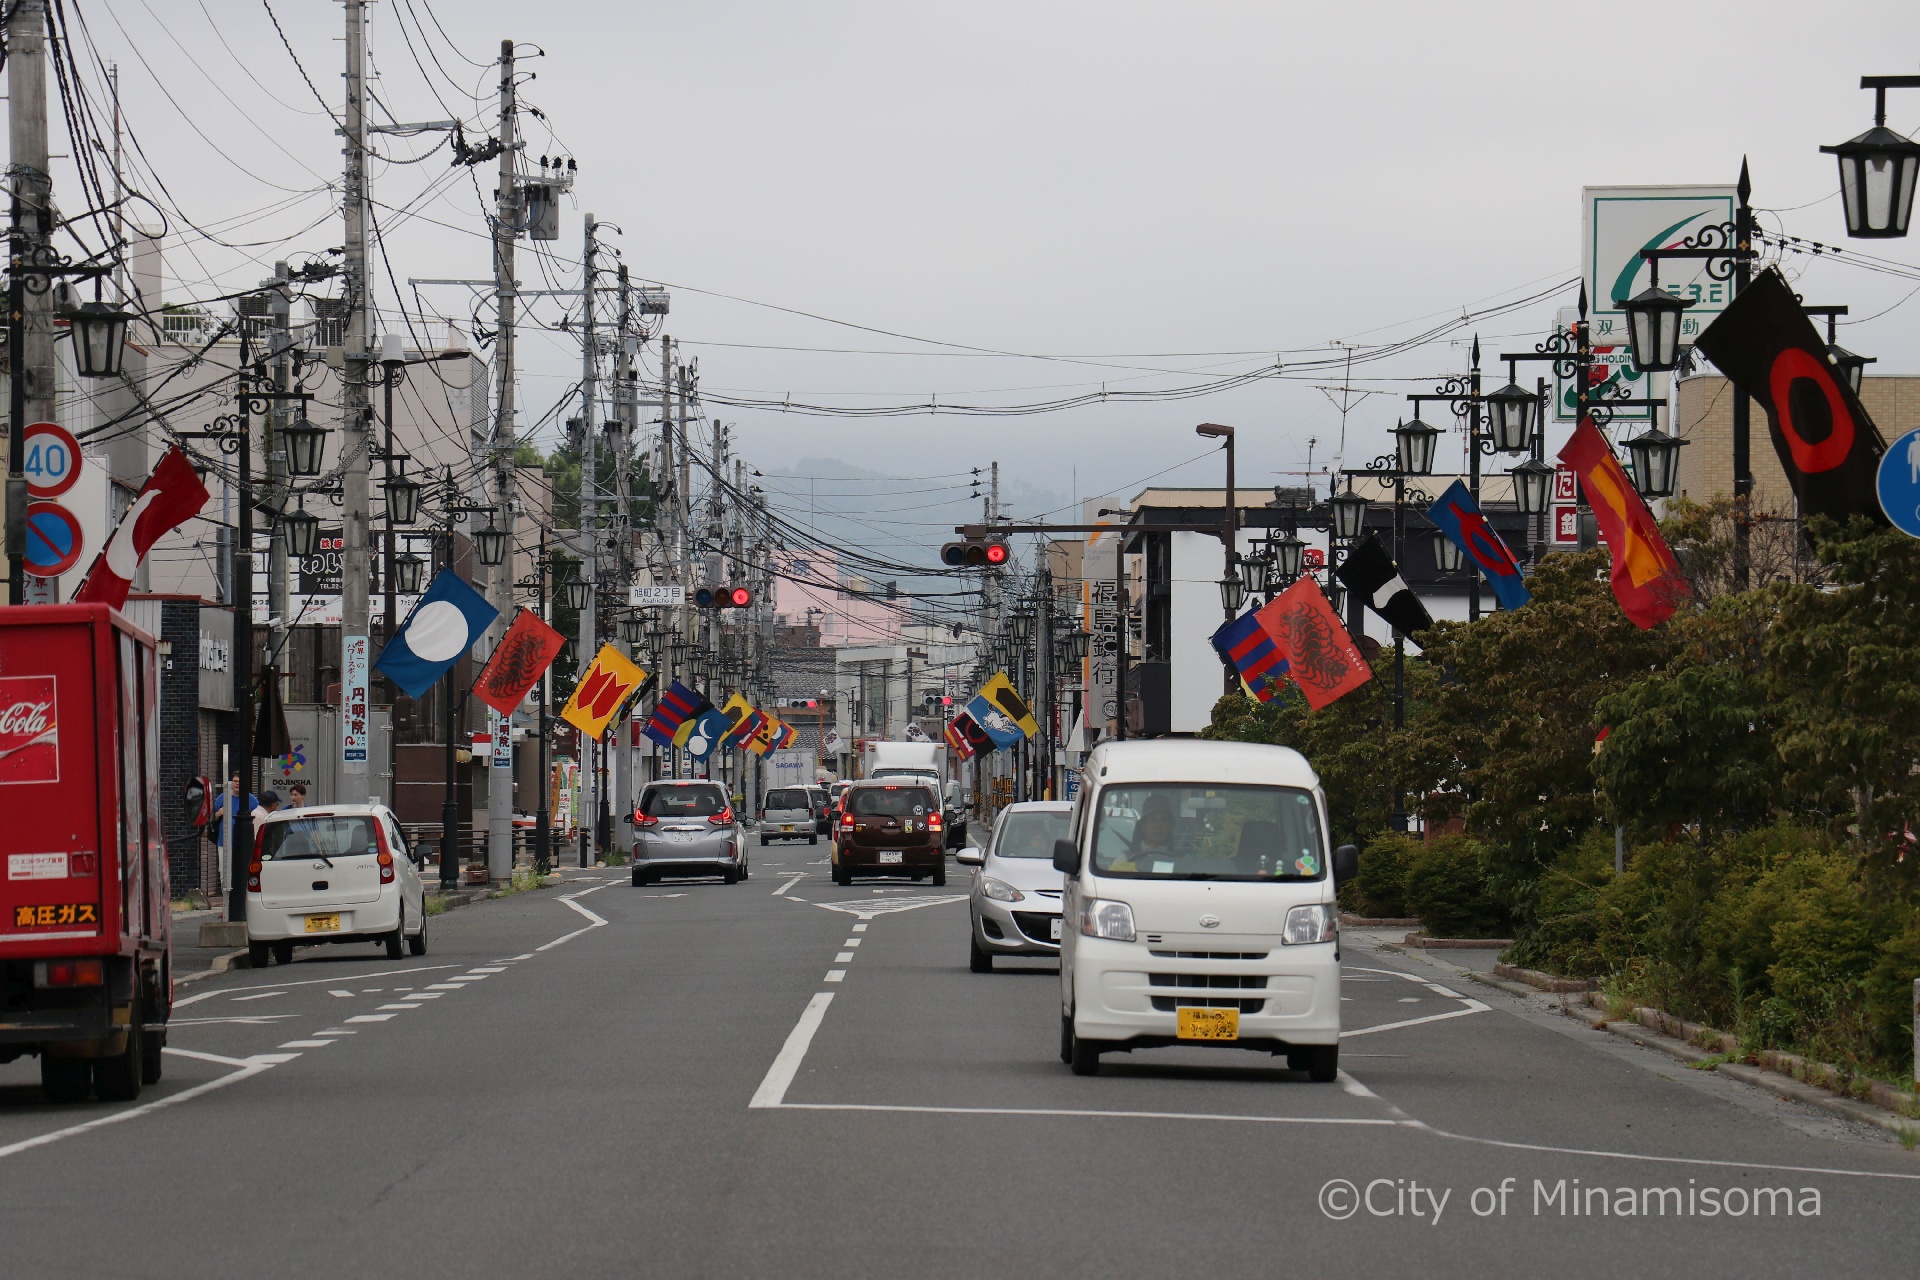 原ノ町駅前を車が走っている様子。野馬追開催前で、道路脇の街灯には旗指物が飾られている。